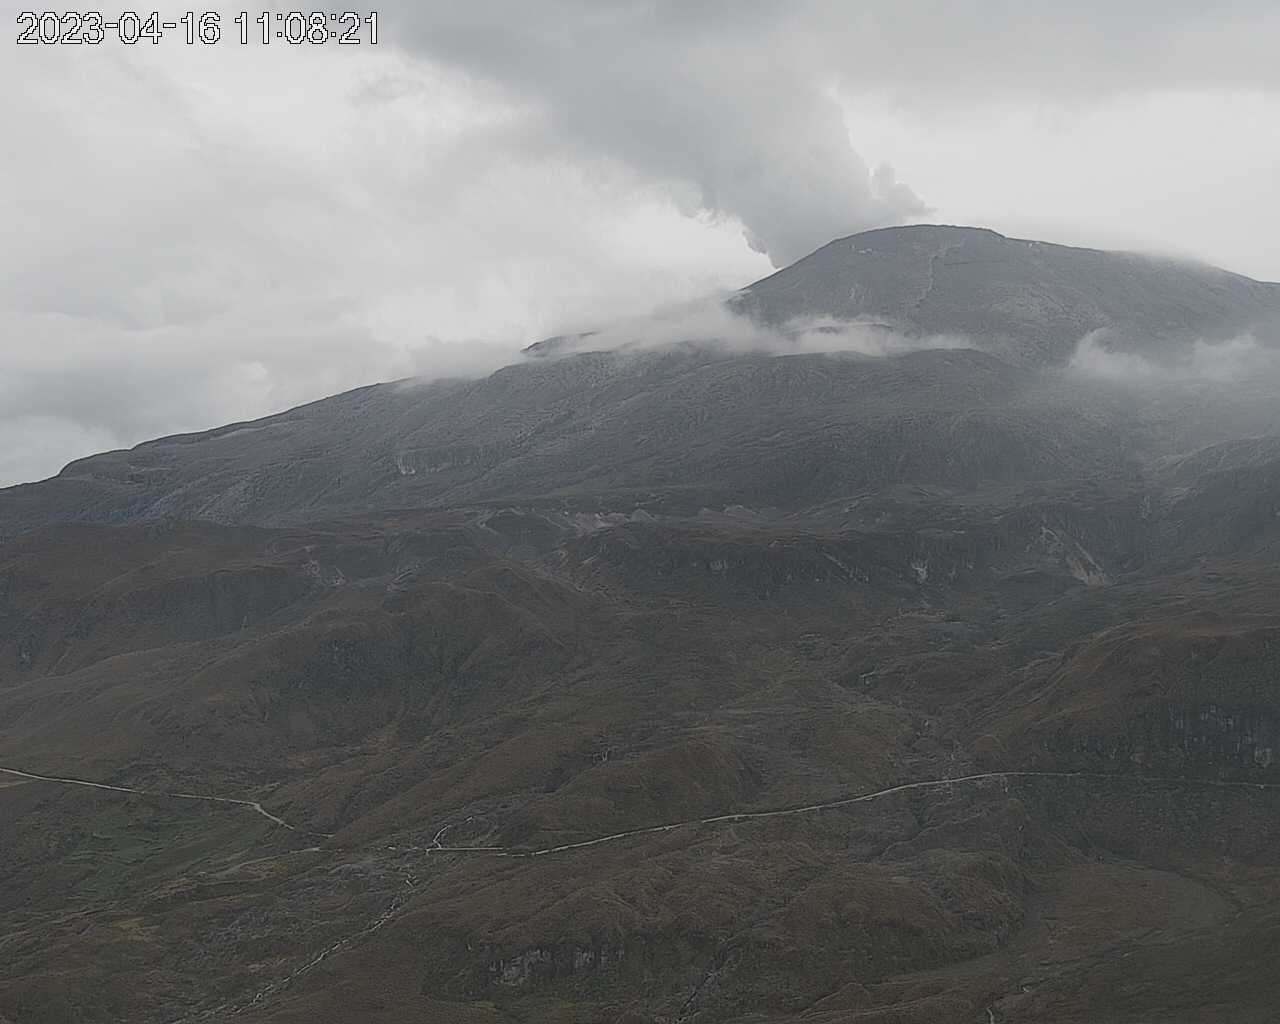 Imágen del Nevado del Ruiz del 16 de abril del 2023. Servicio Geológico Colombiano